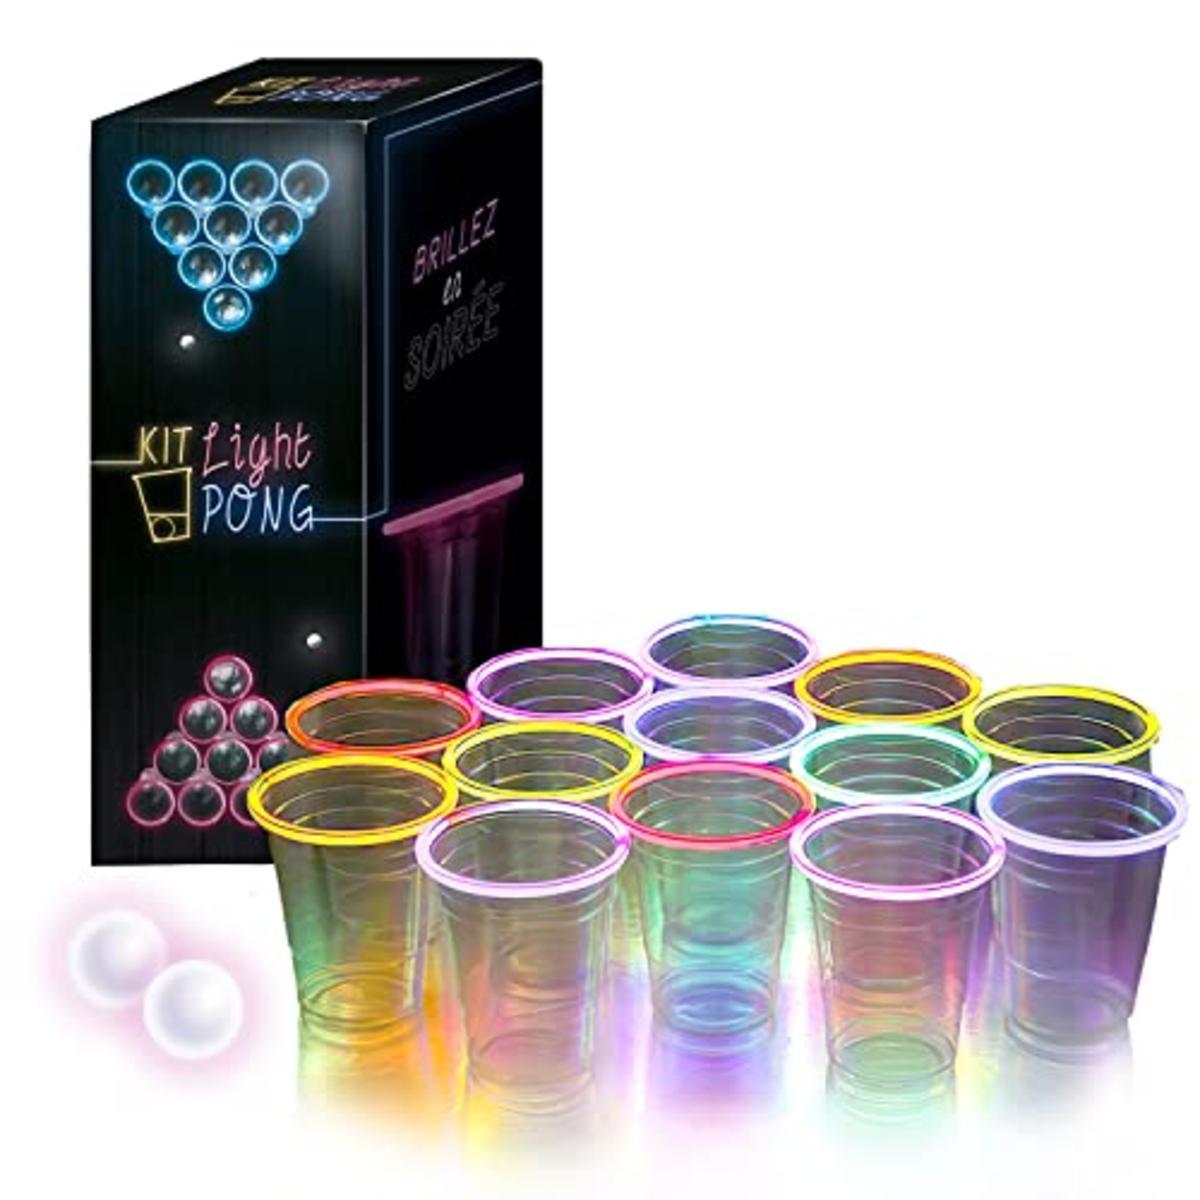 Kit de Light Pong - 13 x H 32 x 10 cm - Transparent, multicolore